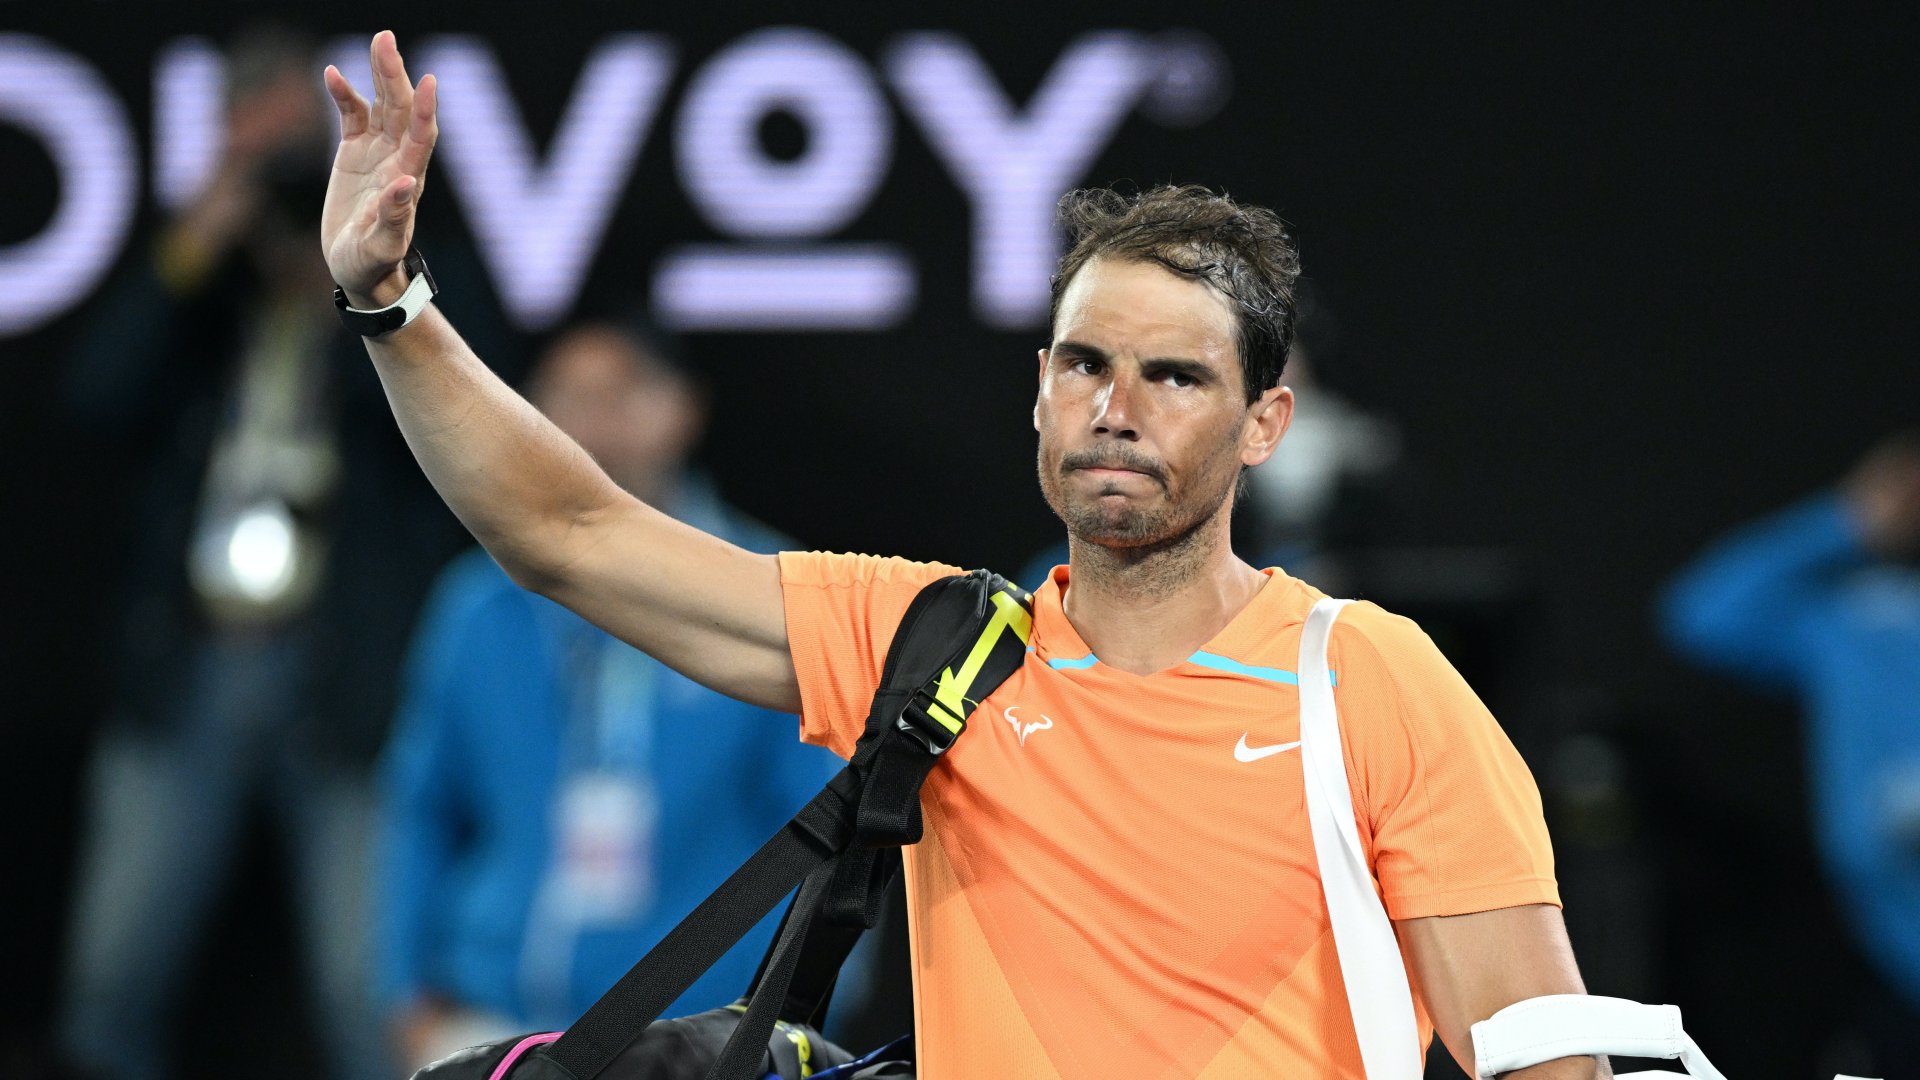 A spanyol Rafael Nadal búcsúzik, miután az amerikai MacKenzie McDonald 6:4, 6:4, 7:5-re legyõzte õt az ausztrál nyílt teniszbajnokság férfi egyesének második fordulójában 2023. január 18-án